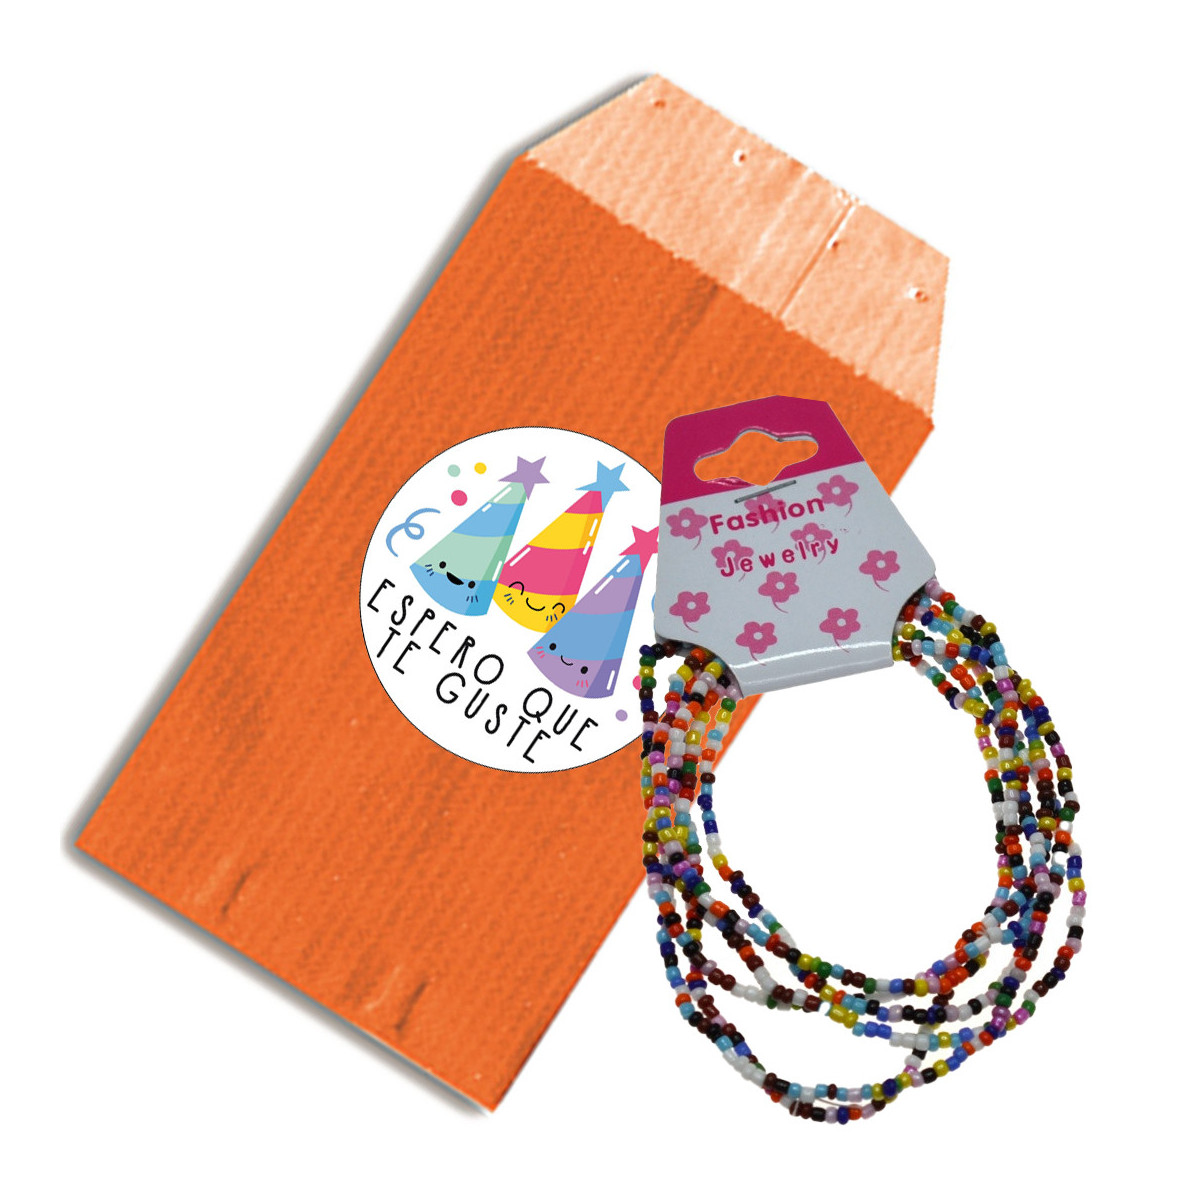 Petits bracelets boules colorés avec enveloppe cadeau orange et autocollant avec phrase